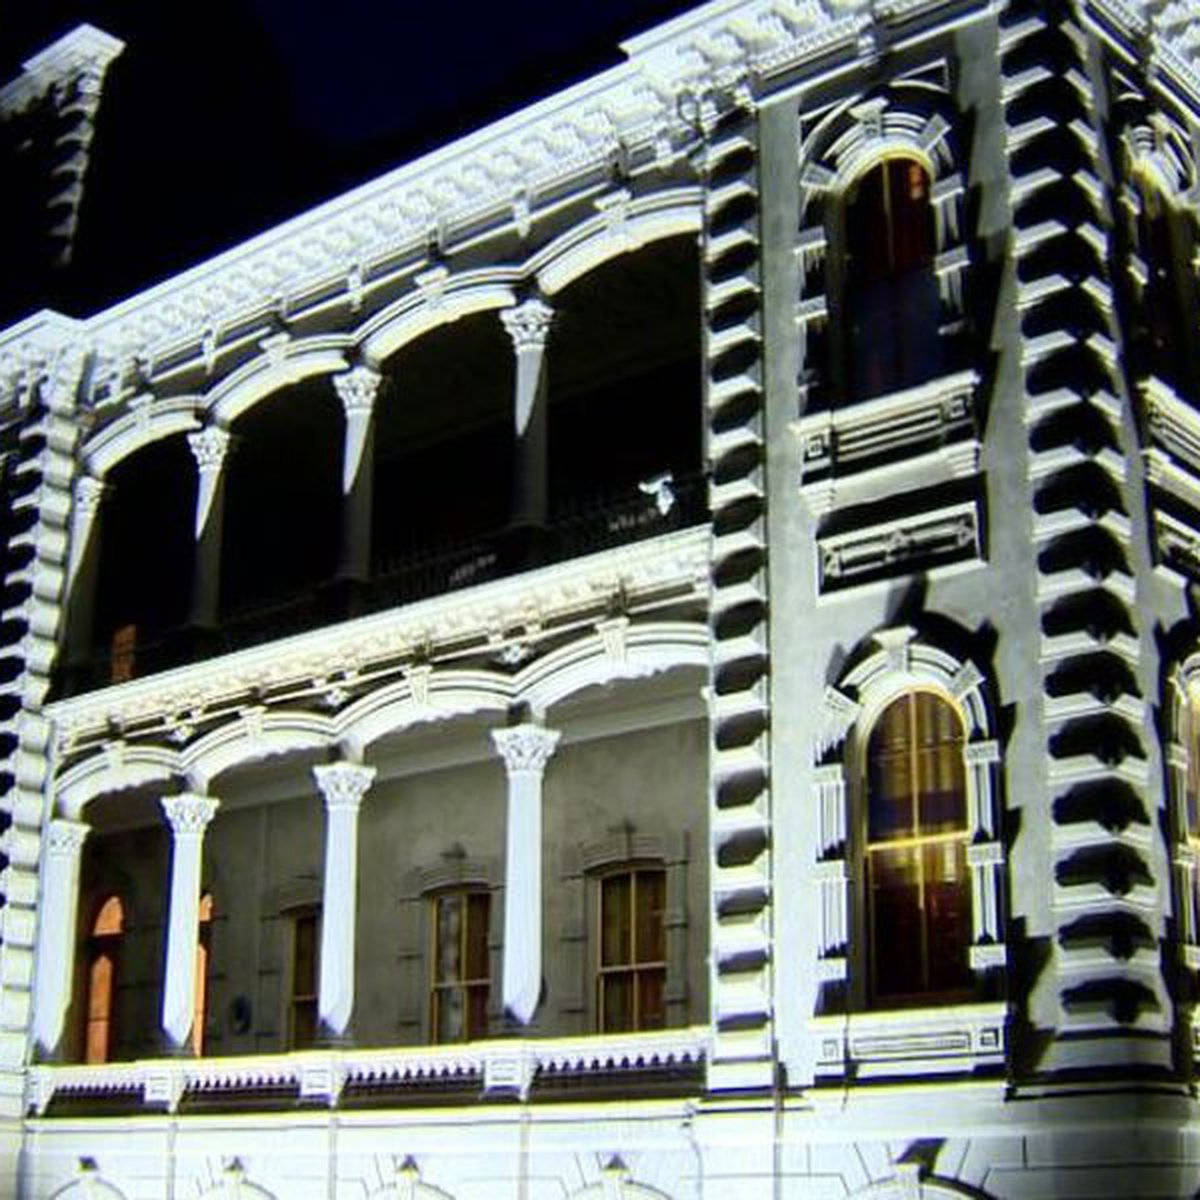 Shadowed Iolani Palace At Night Wallpaper